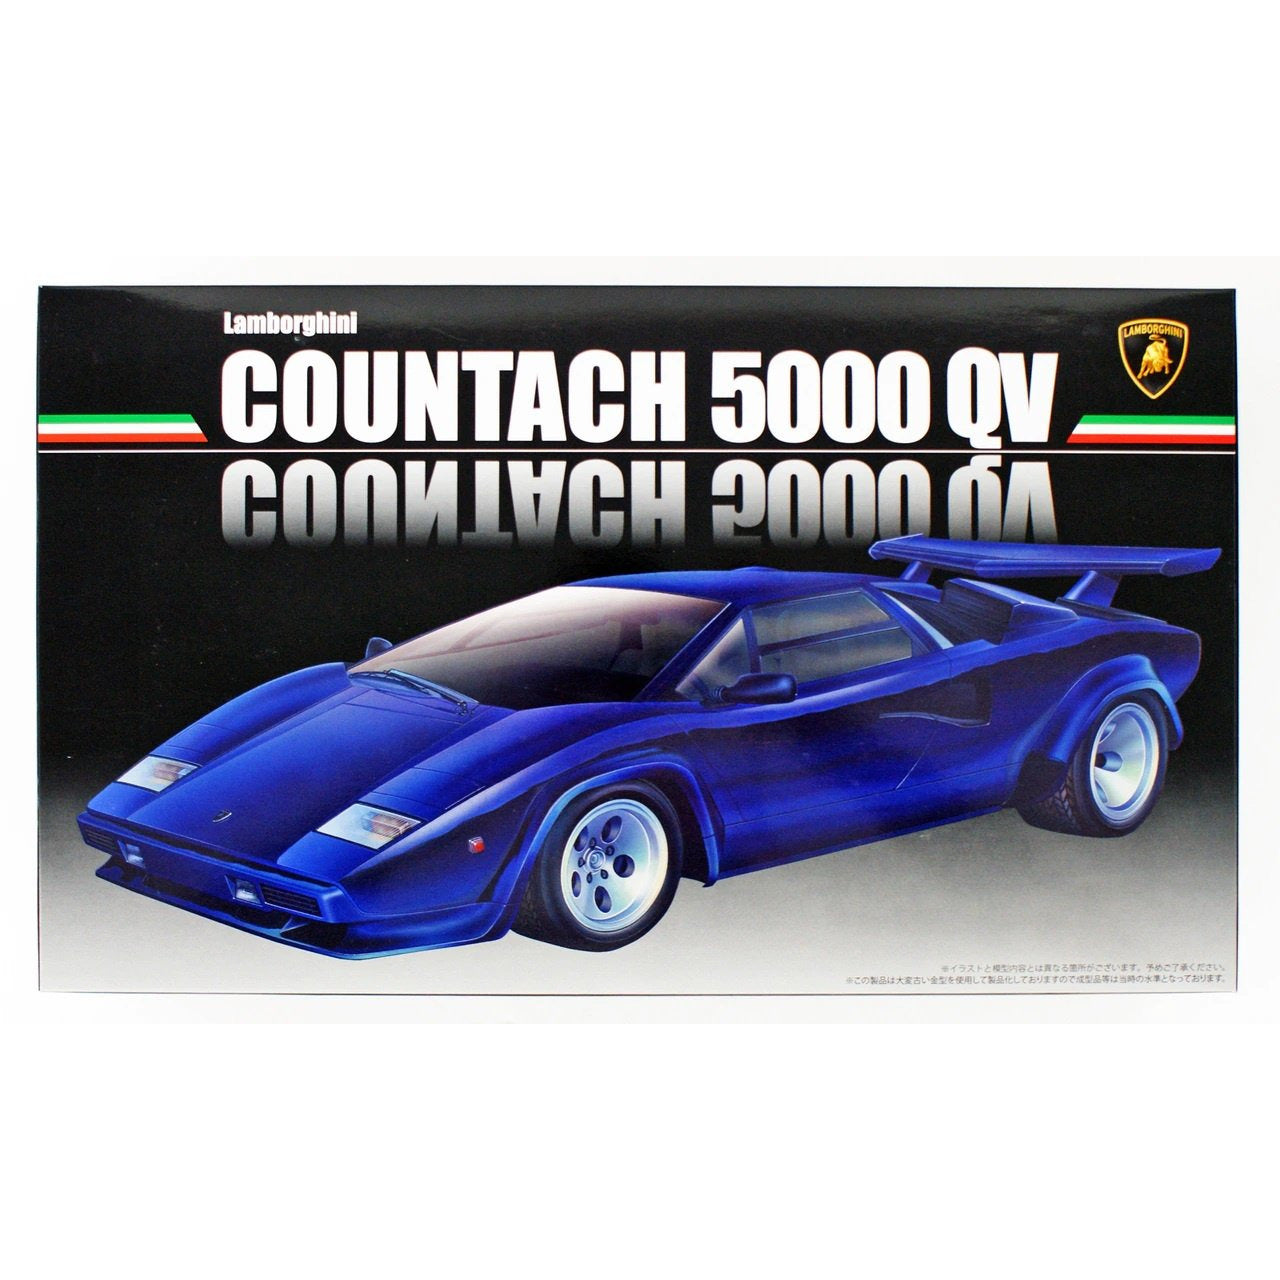 Lamborghini Countach 5000 QuattroValvole 1/24 by Fujimi